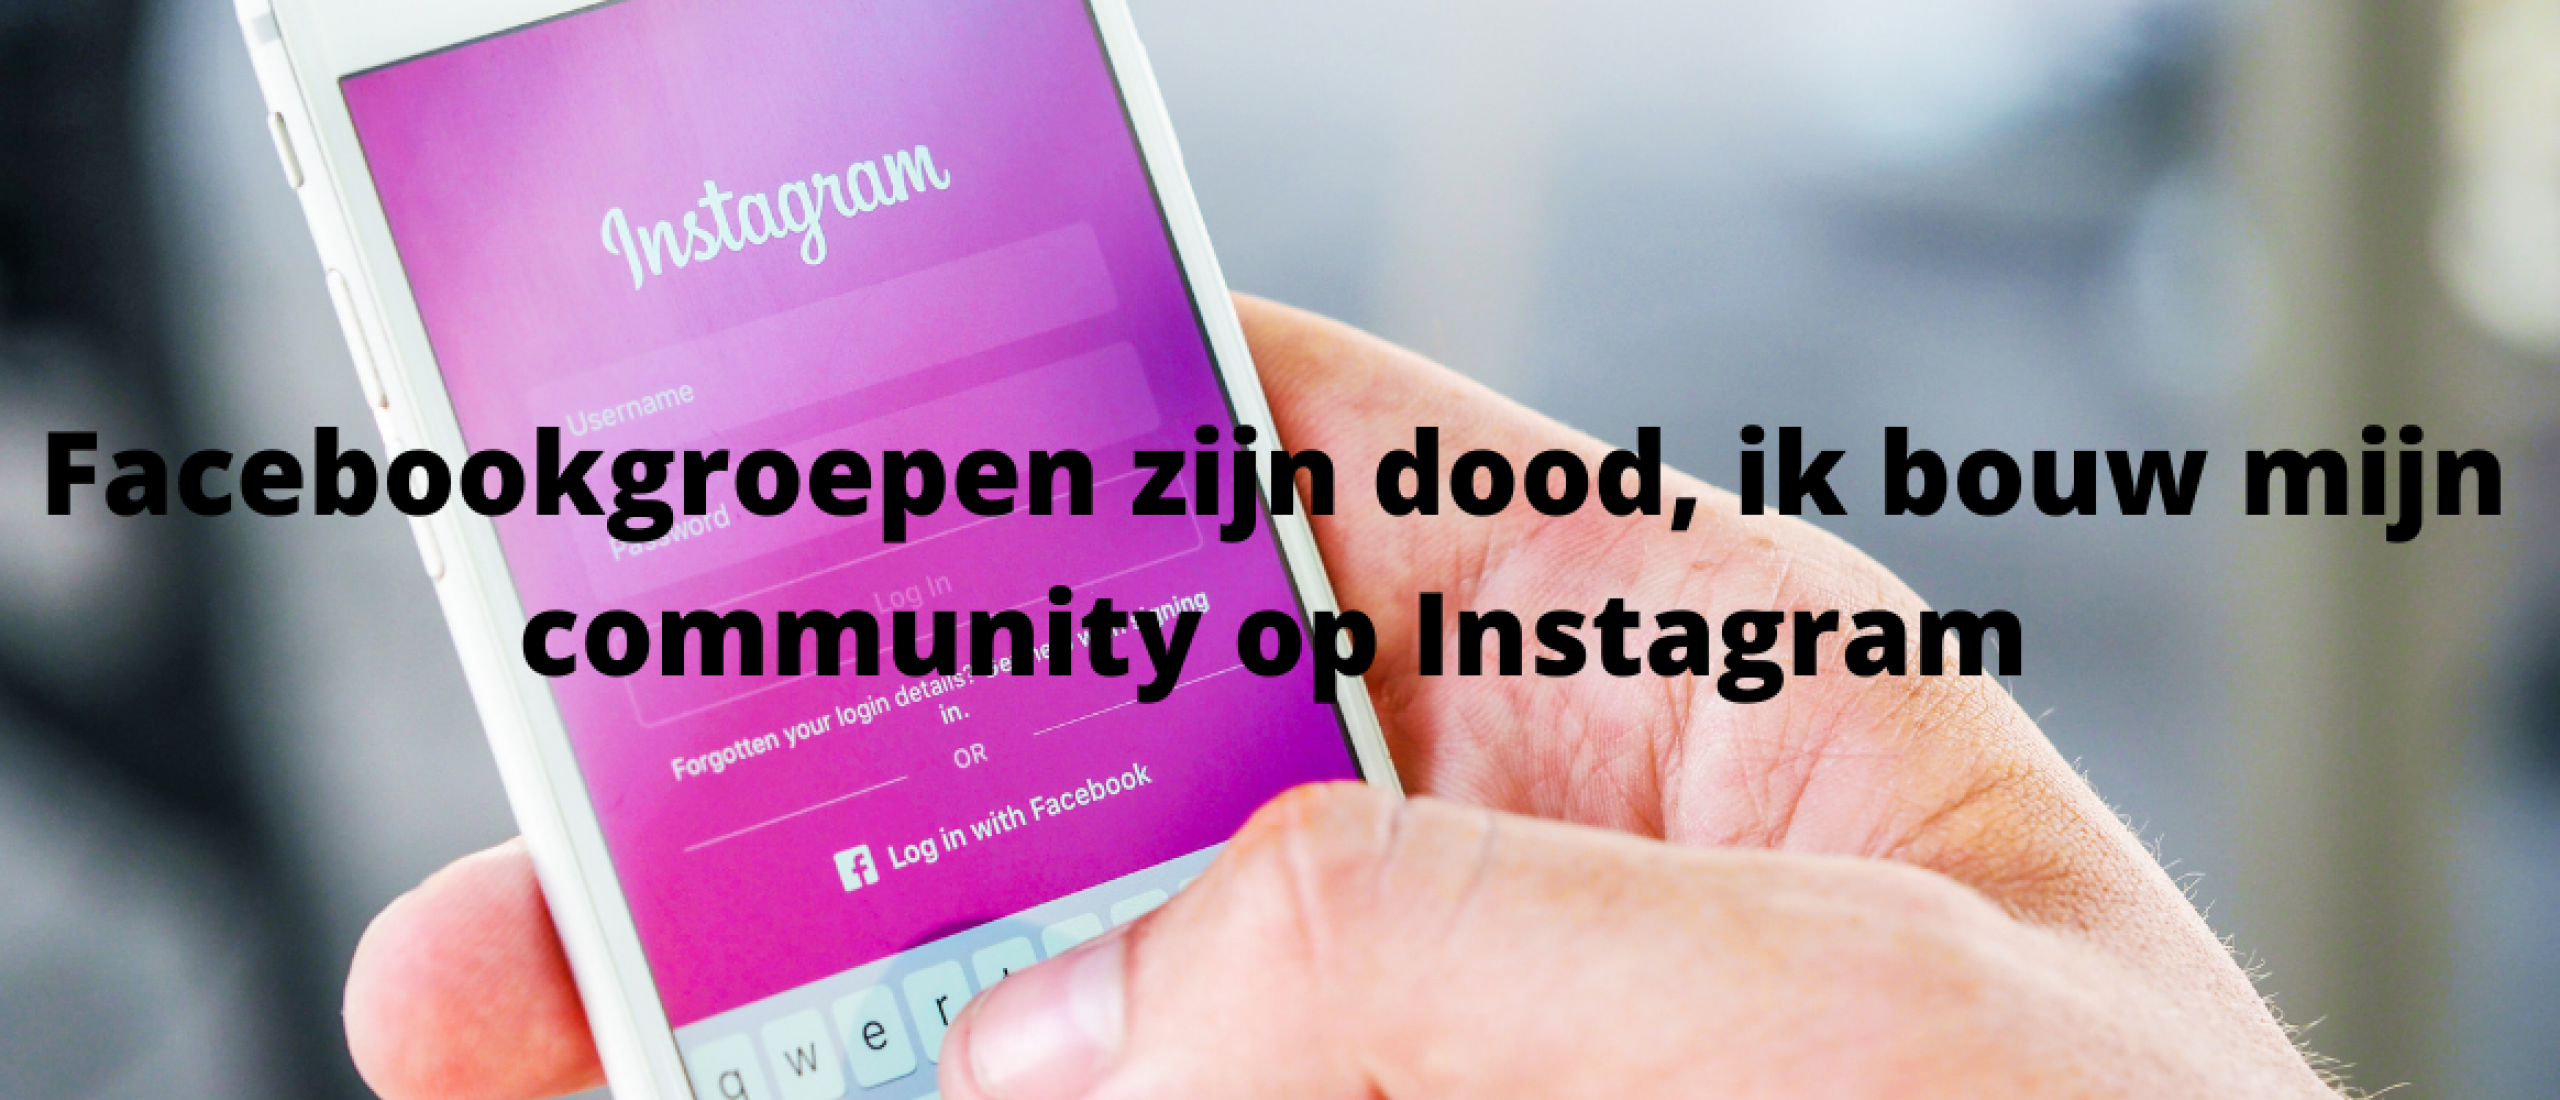 Facebookgroepen zijn dood, ik bouw mijn community op Instagram